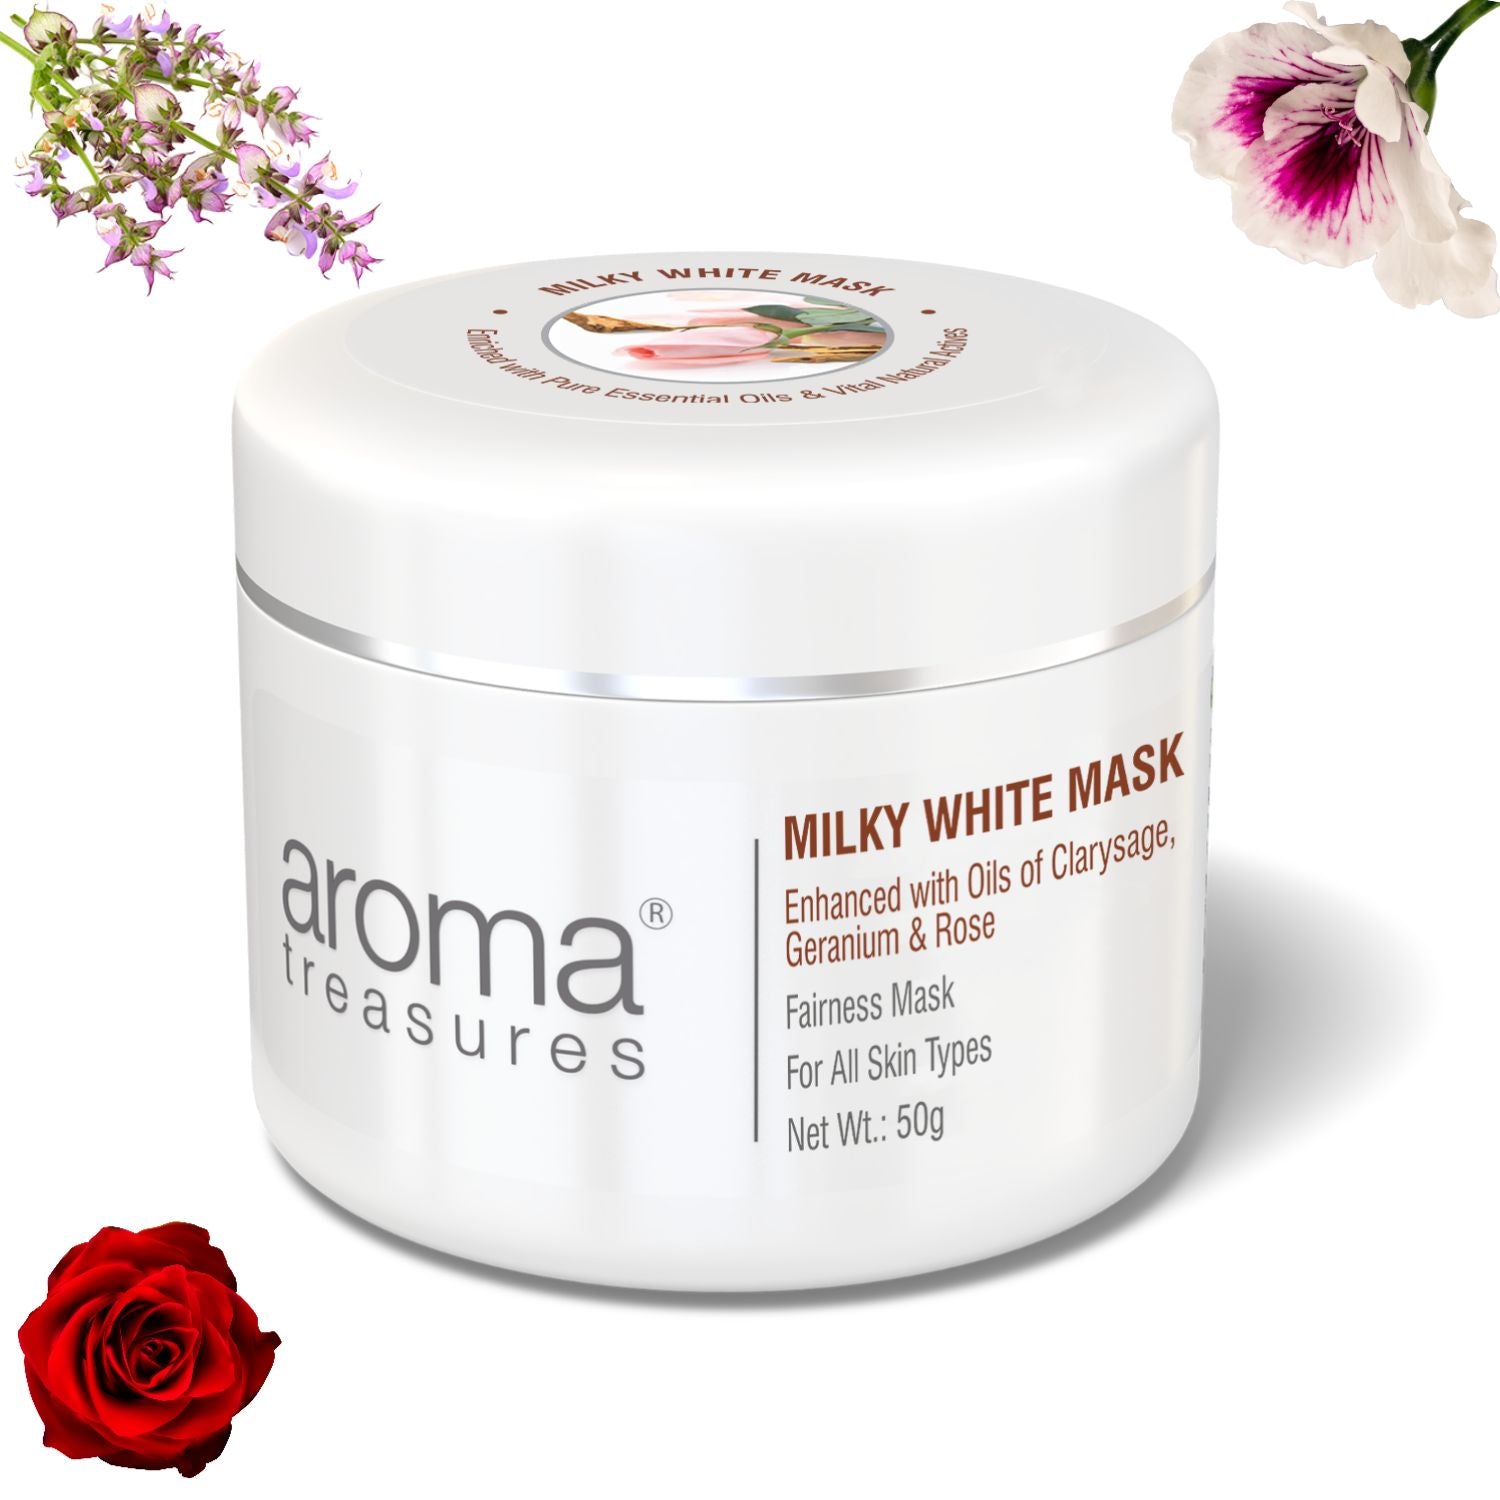 Aroma Treasures Milky White Mask - 50g